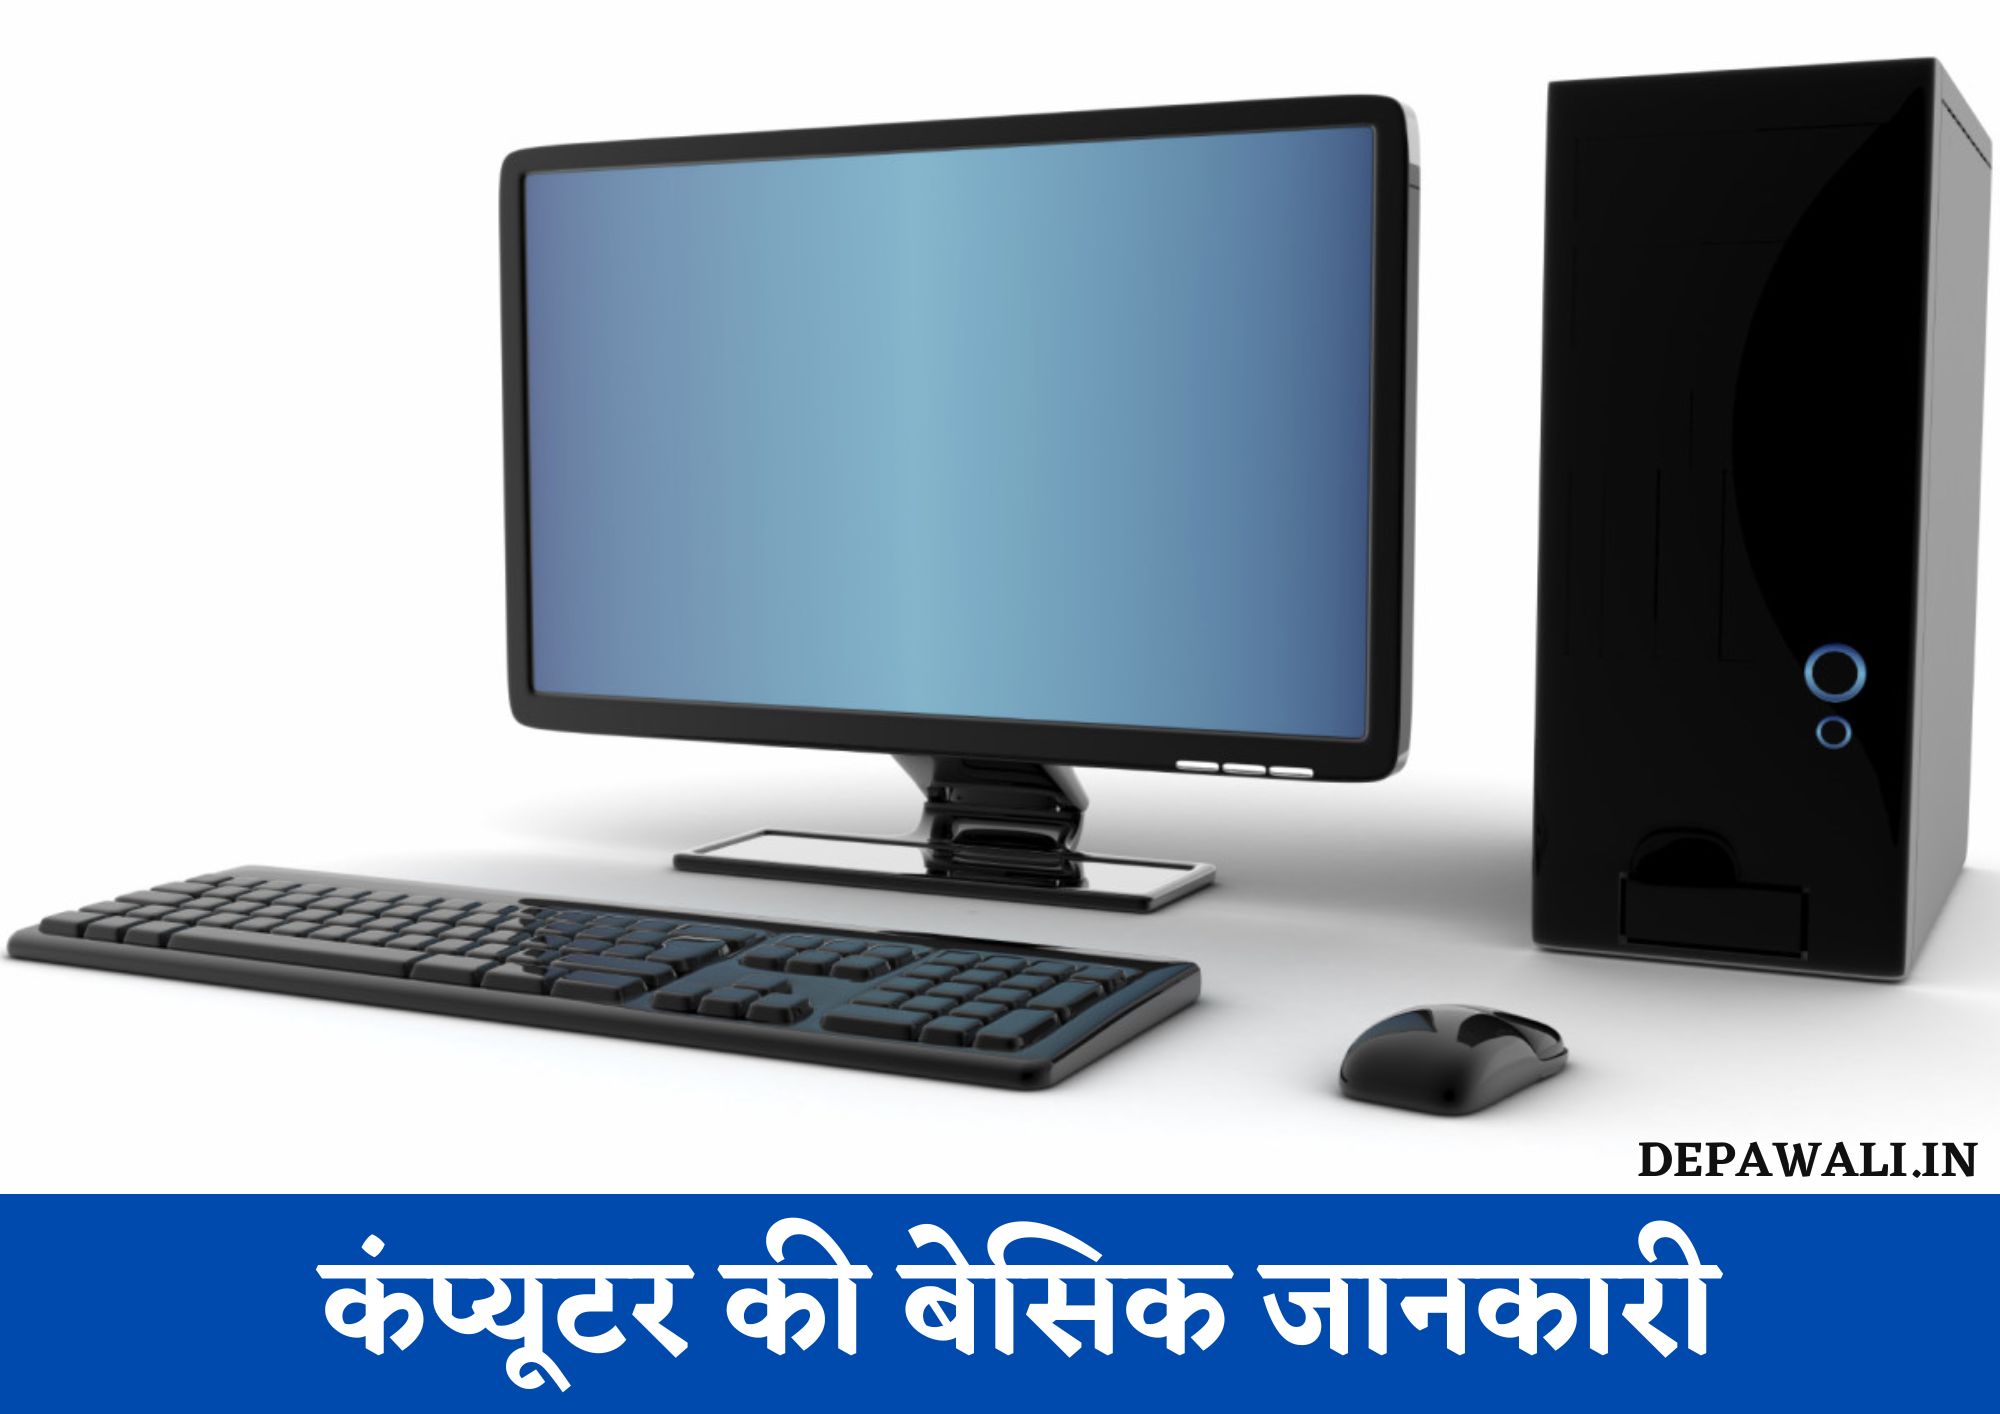 कंप्यूटर की बेसिक जानकारी - Basic Knowledge Of Computer In Hindi